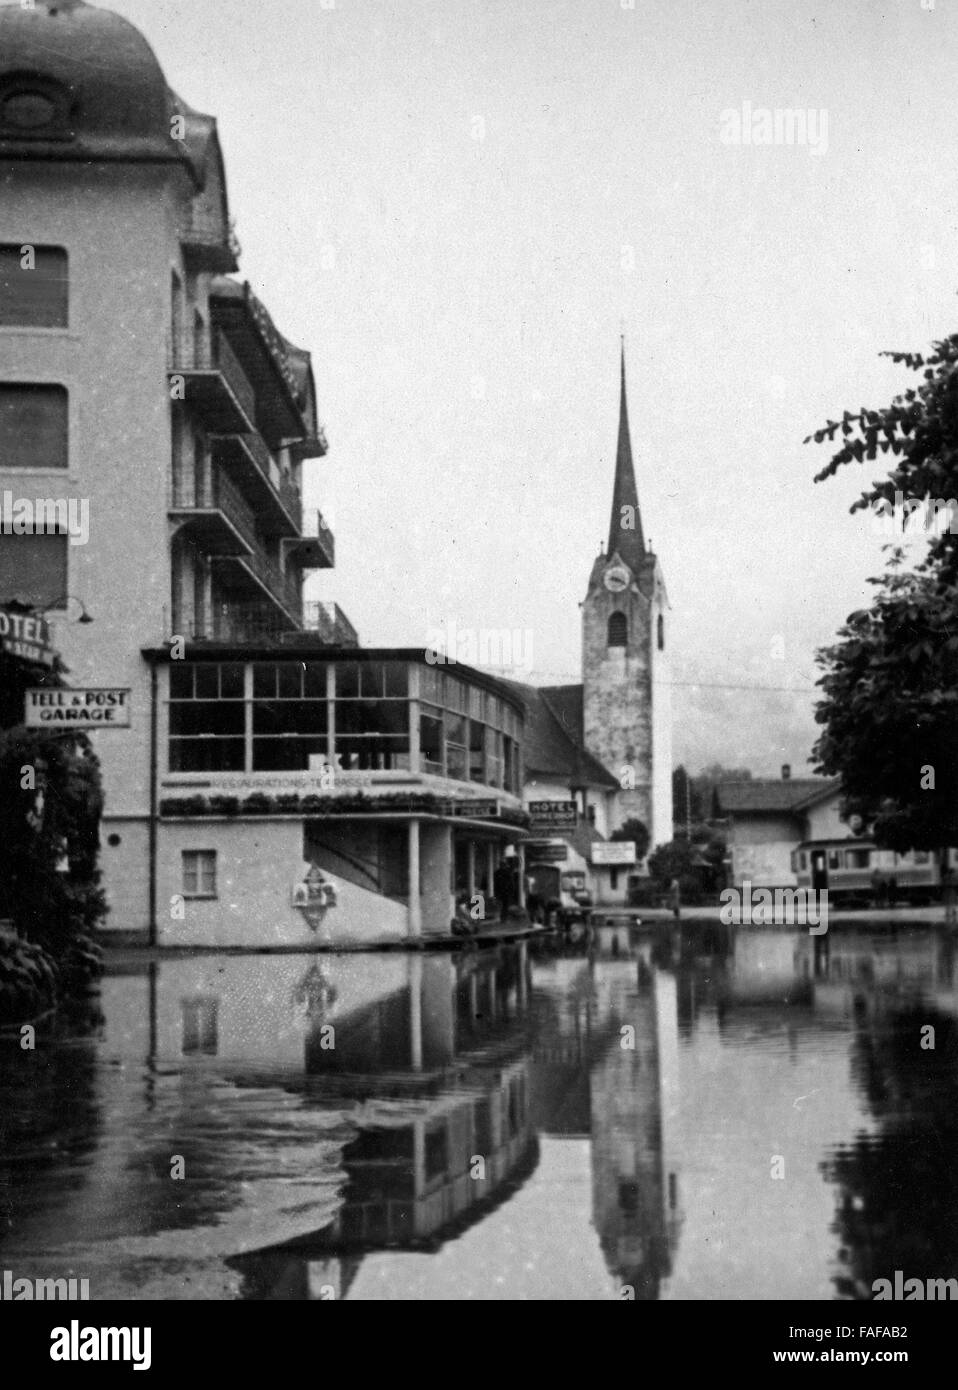 Hochwasser in Flüelen im Kanton Uri in der Schweiz, 1930er Jahre. Inondation à Fluelen au canton d'Uri, Suisse 1930. Banque D'Images